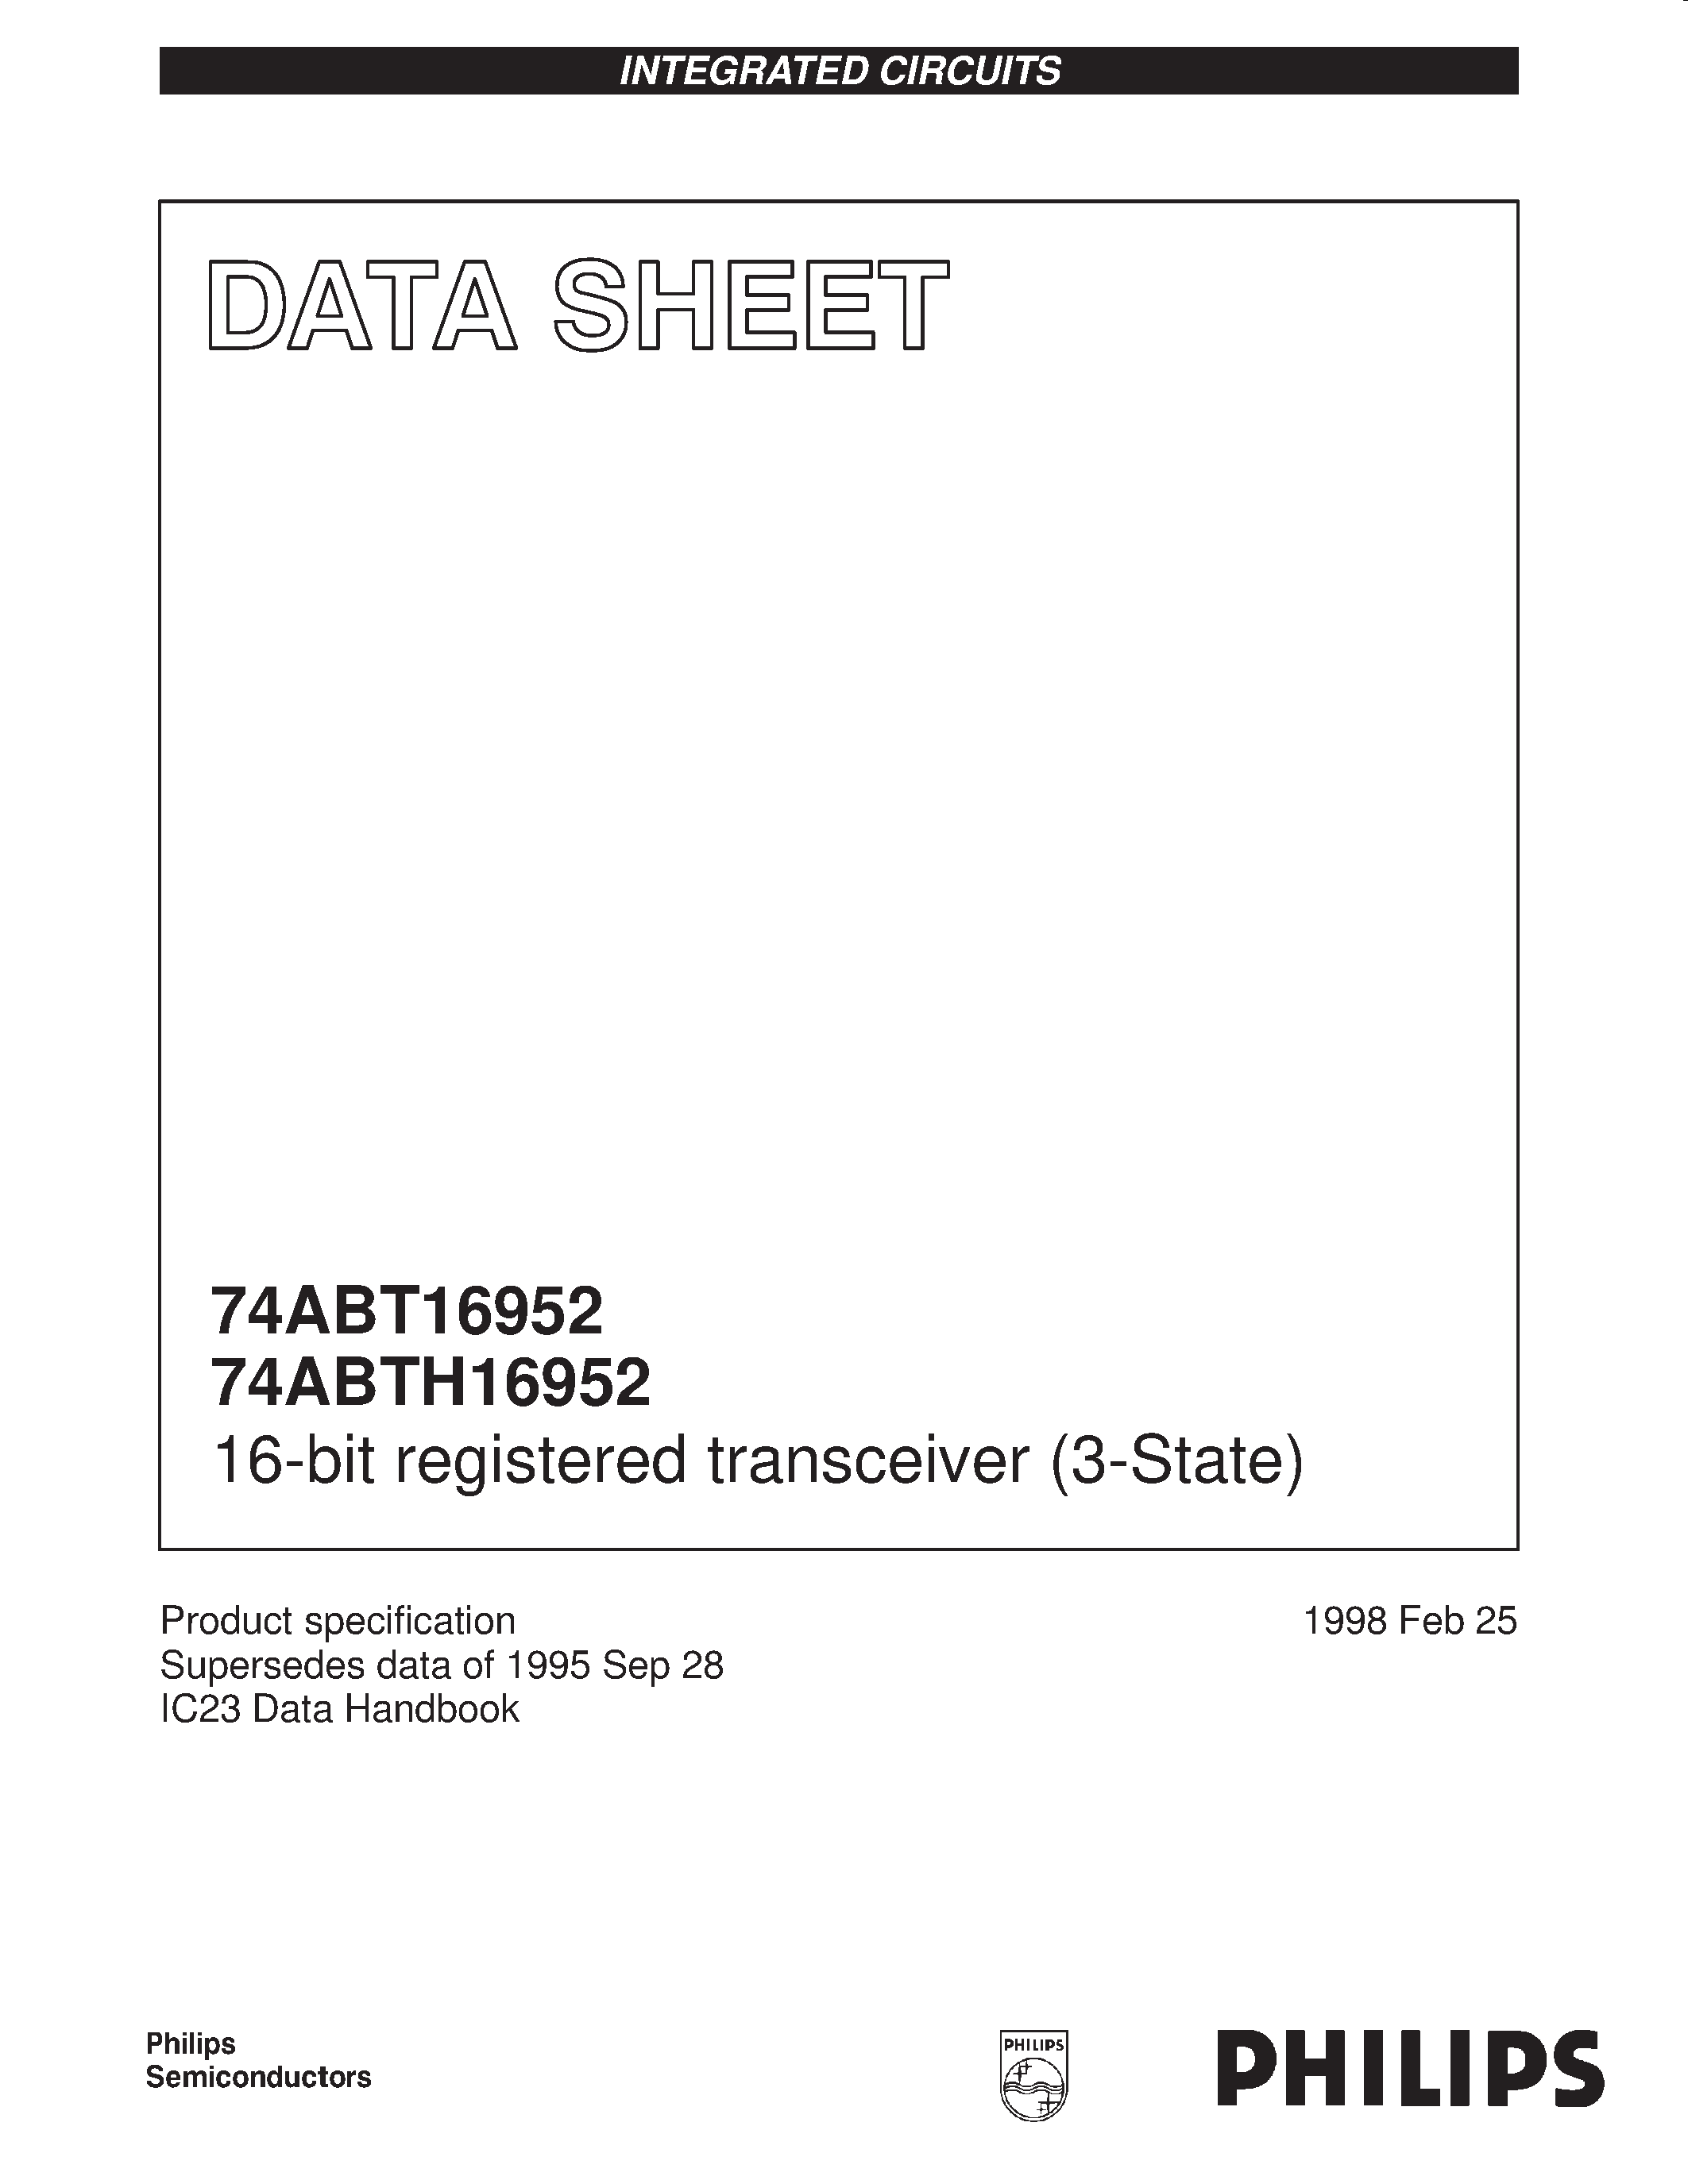 Даташит 74ABTH16952DL - 16-bit registered transceiver 3-State страница 1